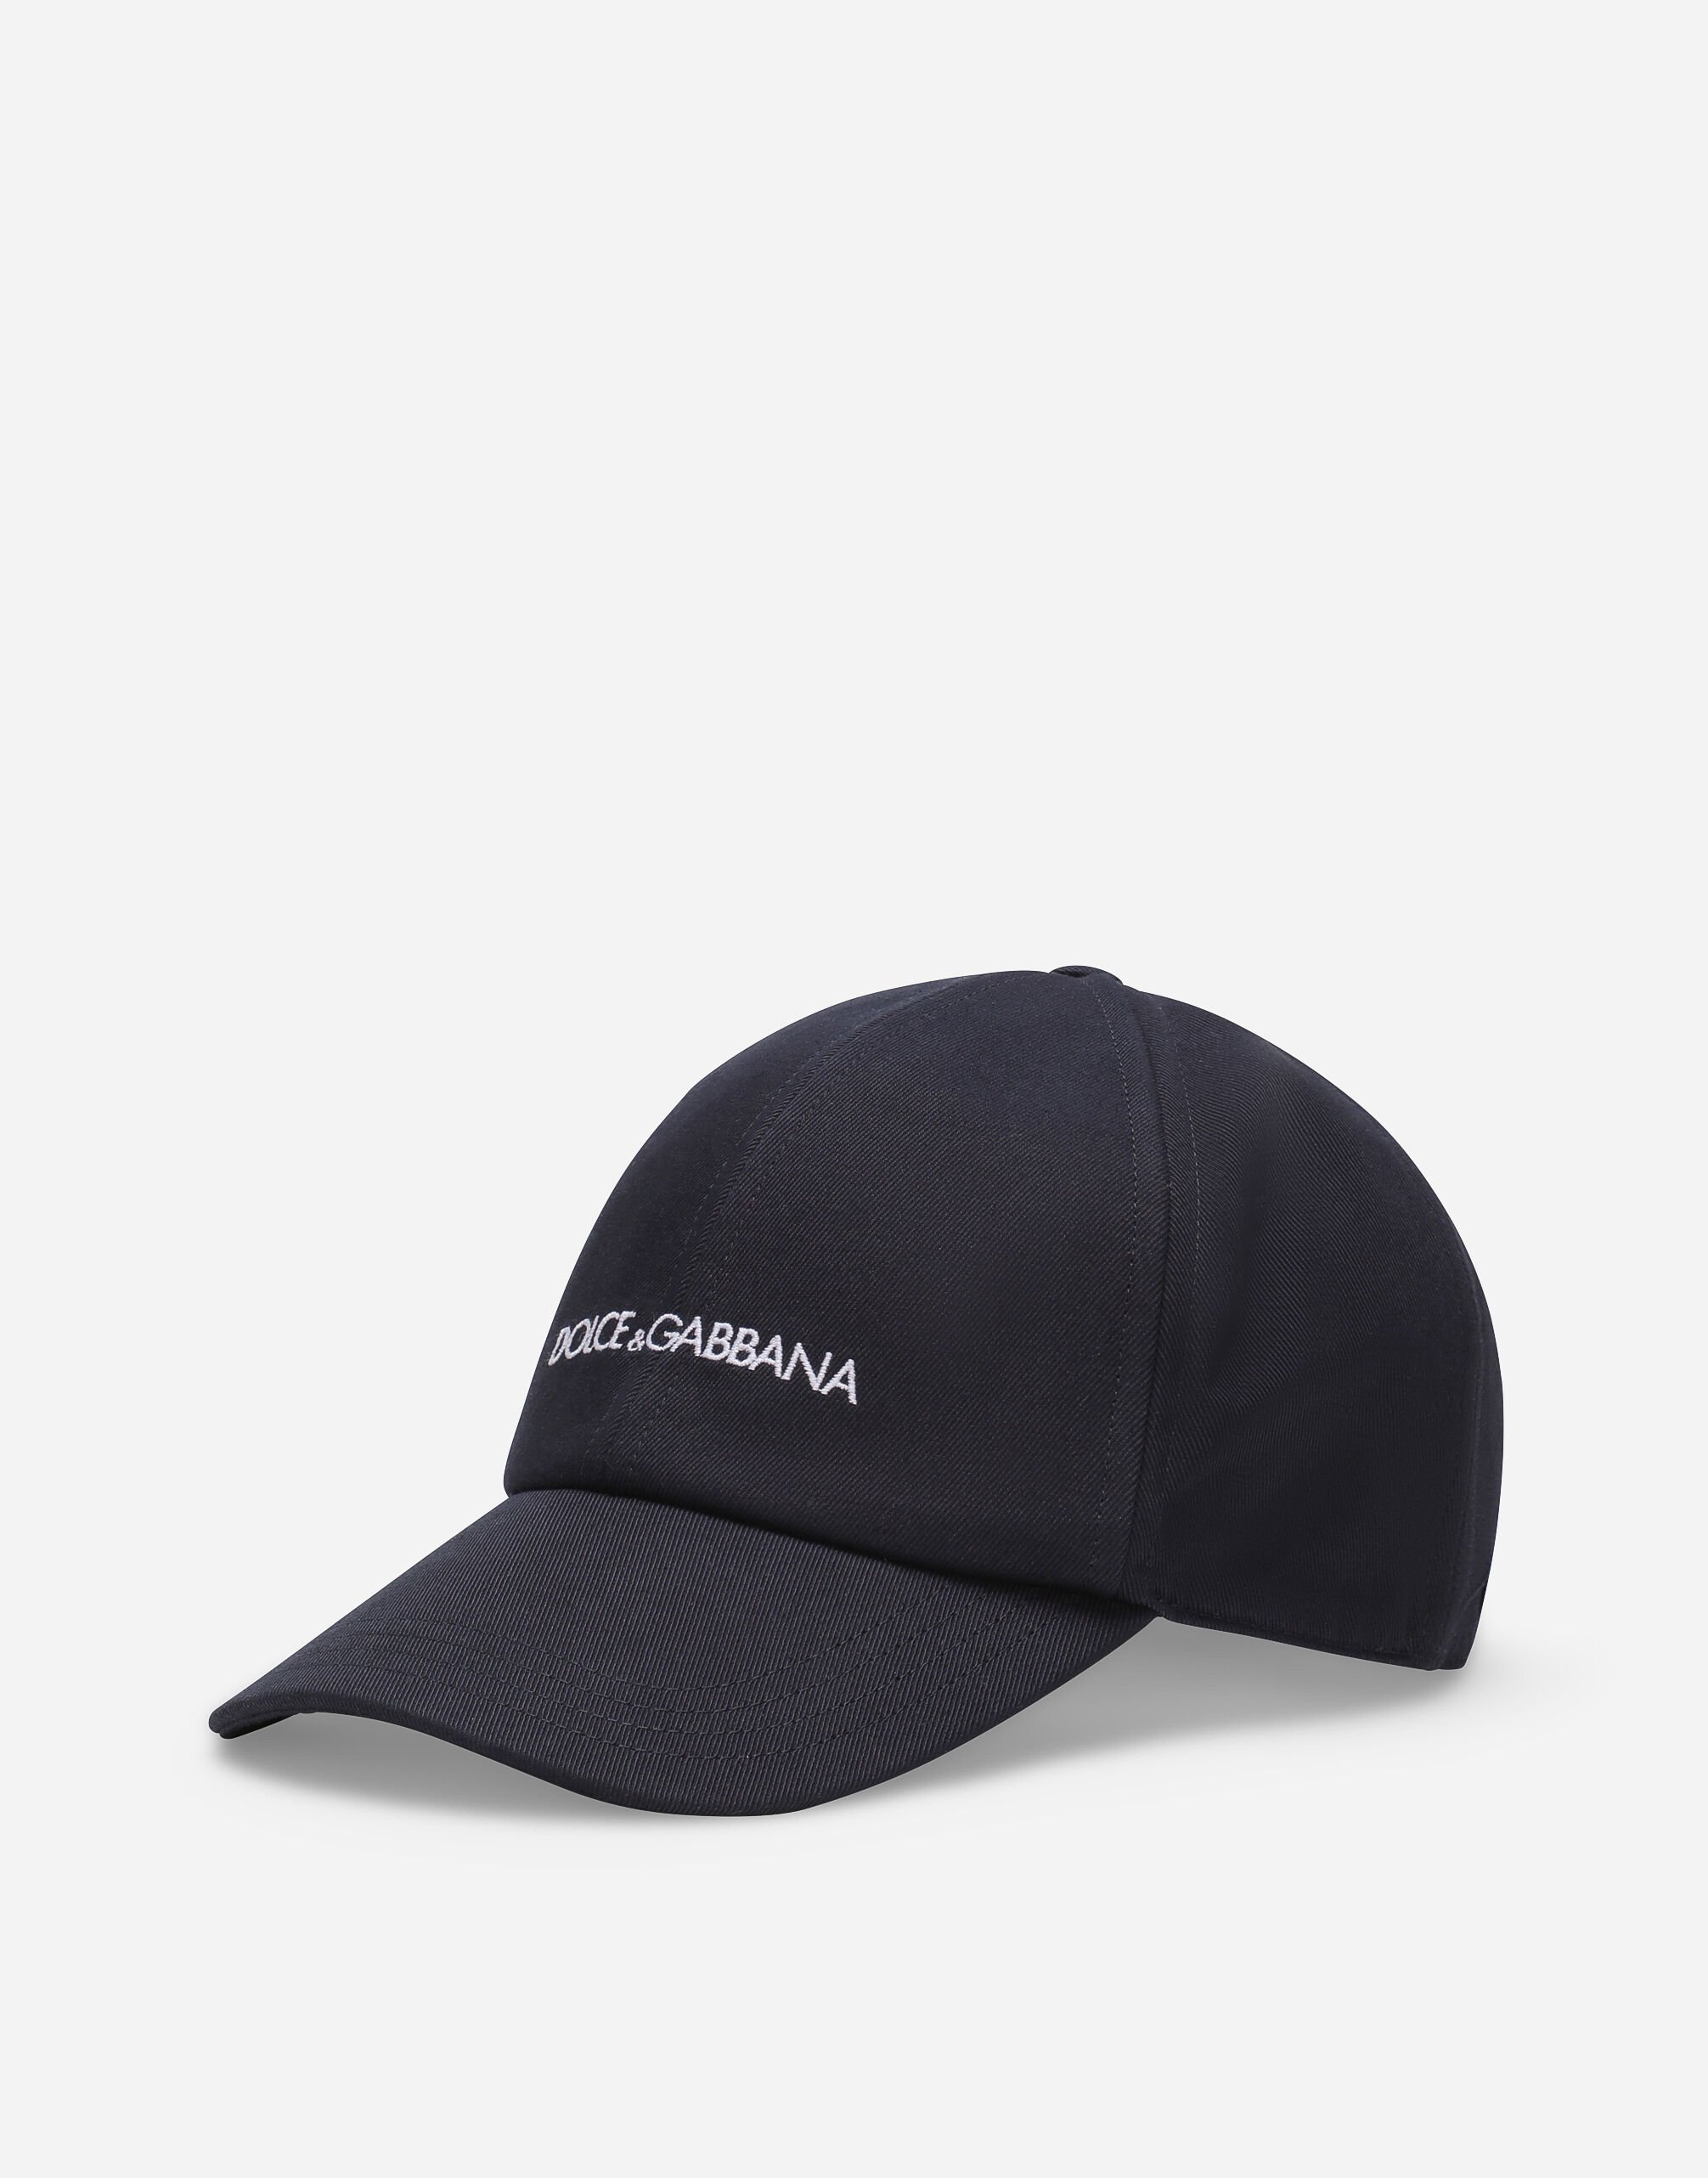 Dolce & Gabbana Cotton baseball cap with Dolce&Gabbana logo Print GZ031AGI897